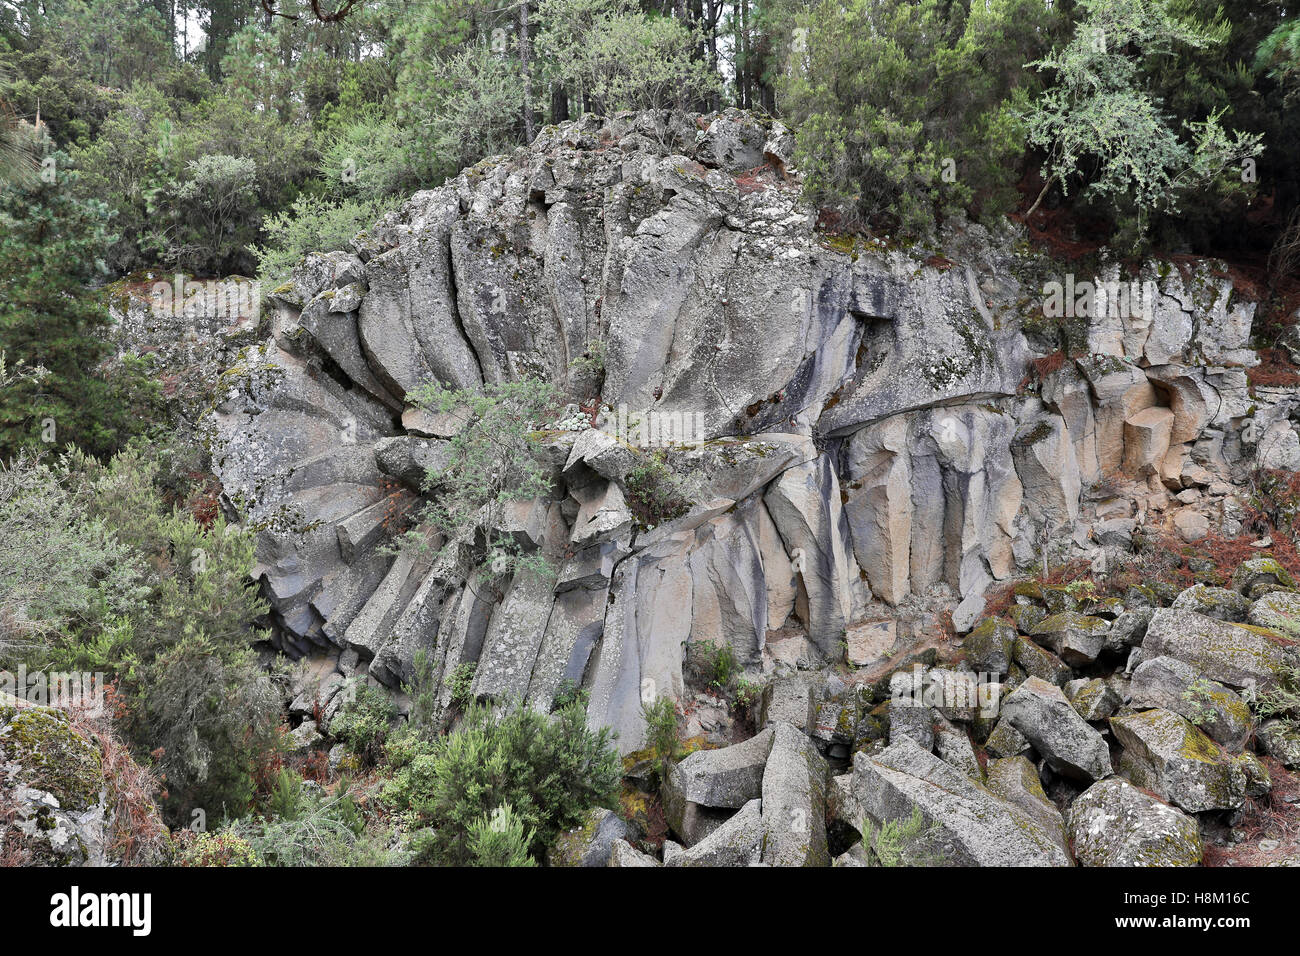 Rock formation, La margarita de piedra Stock Photo